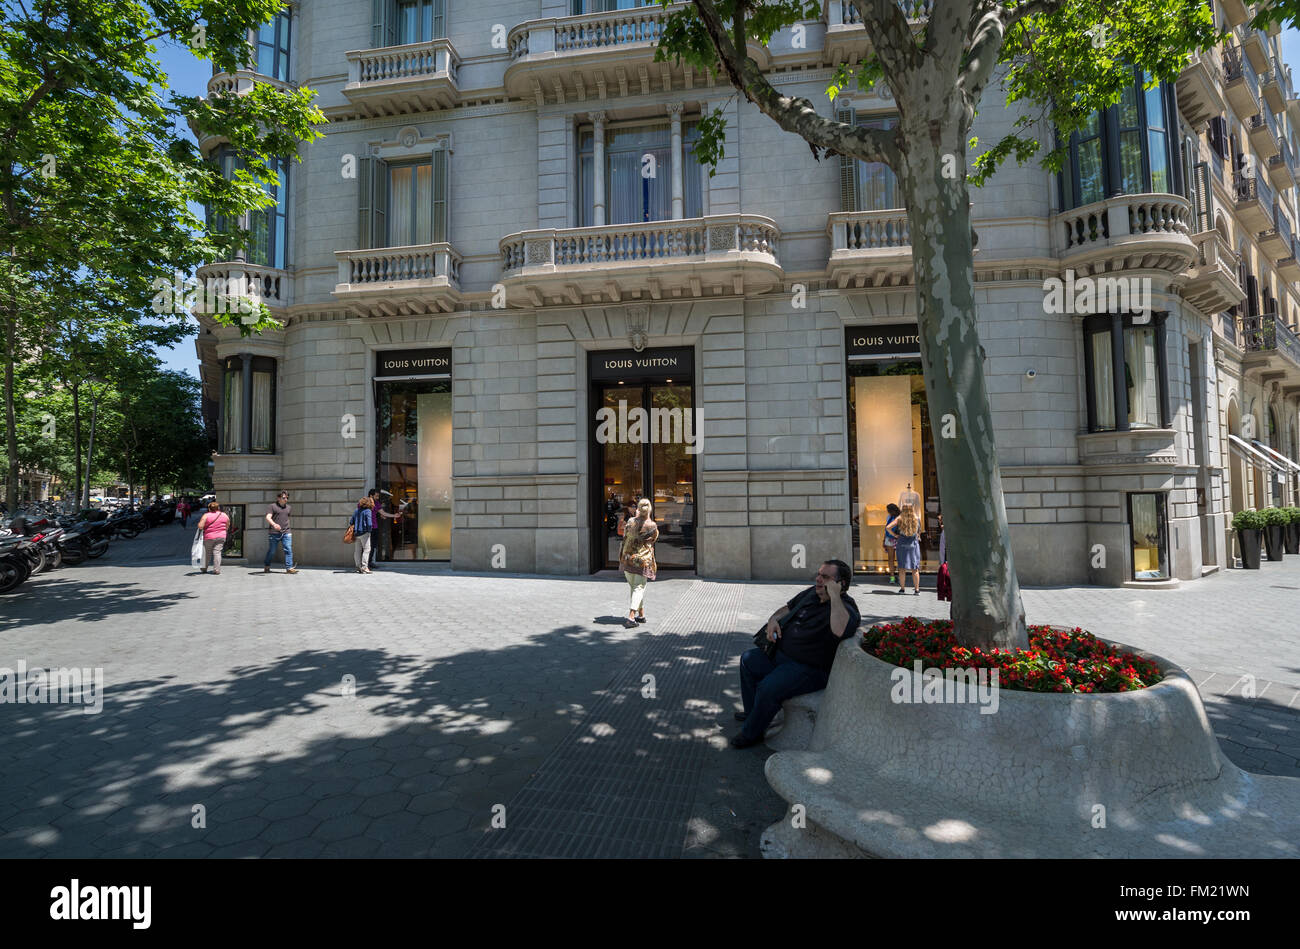 Almacén de Louis Vuitton en la avenida Paseo de Gracia en Barcelona, España  Fotografía de stock - Alamy